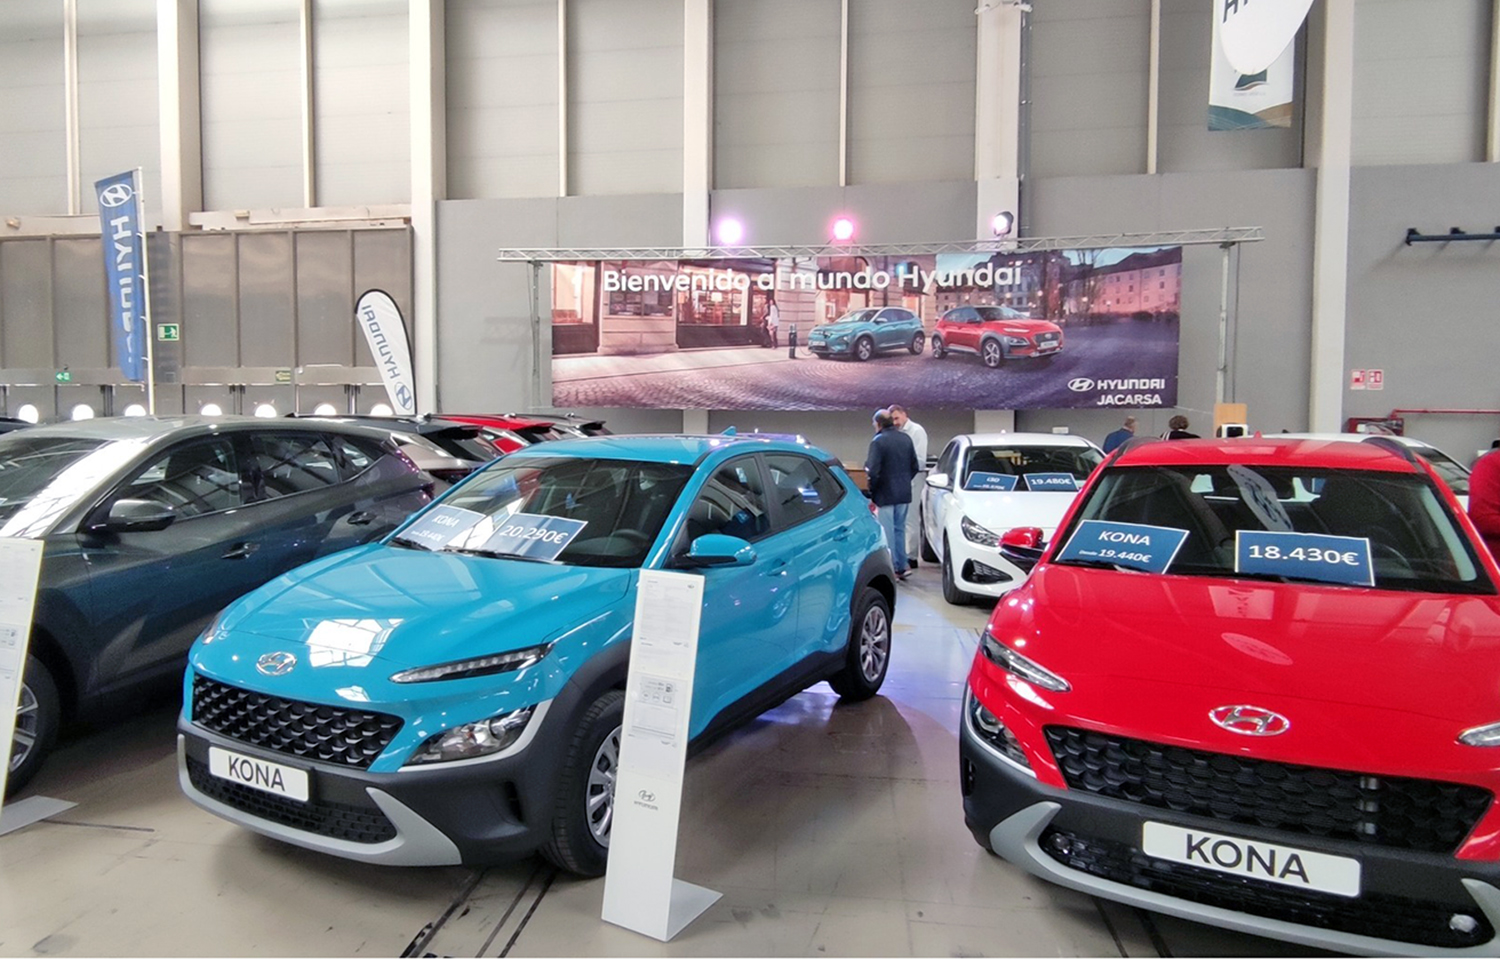 El Factory del Automóvil cierra sus puertas con unas cifras de ventas y visitantes muy destacables, según la organización